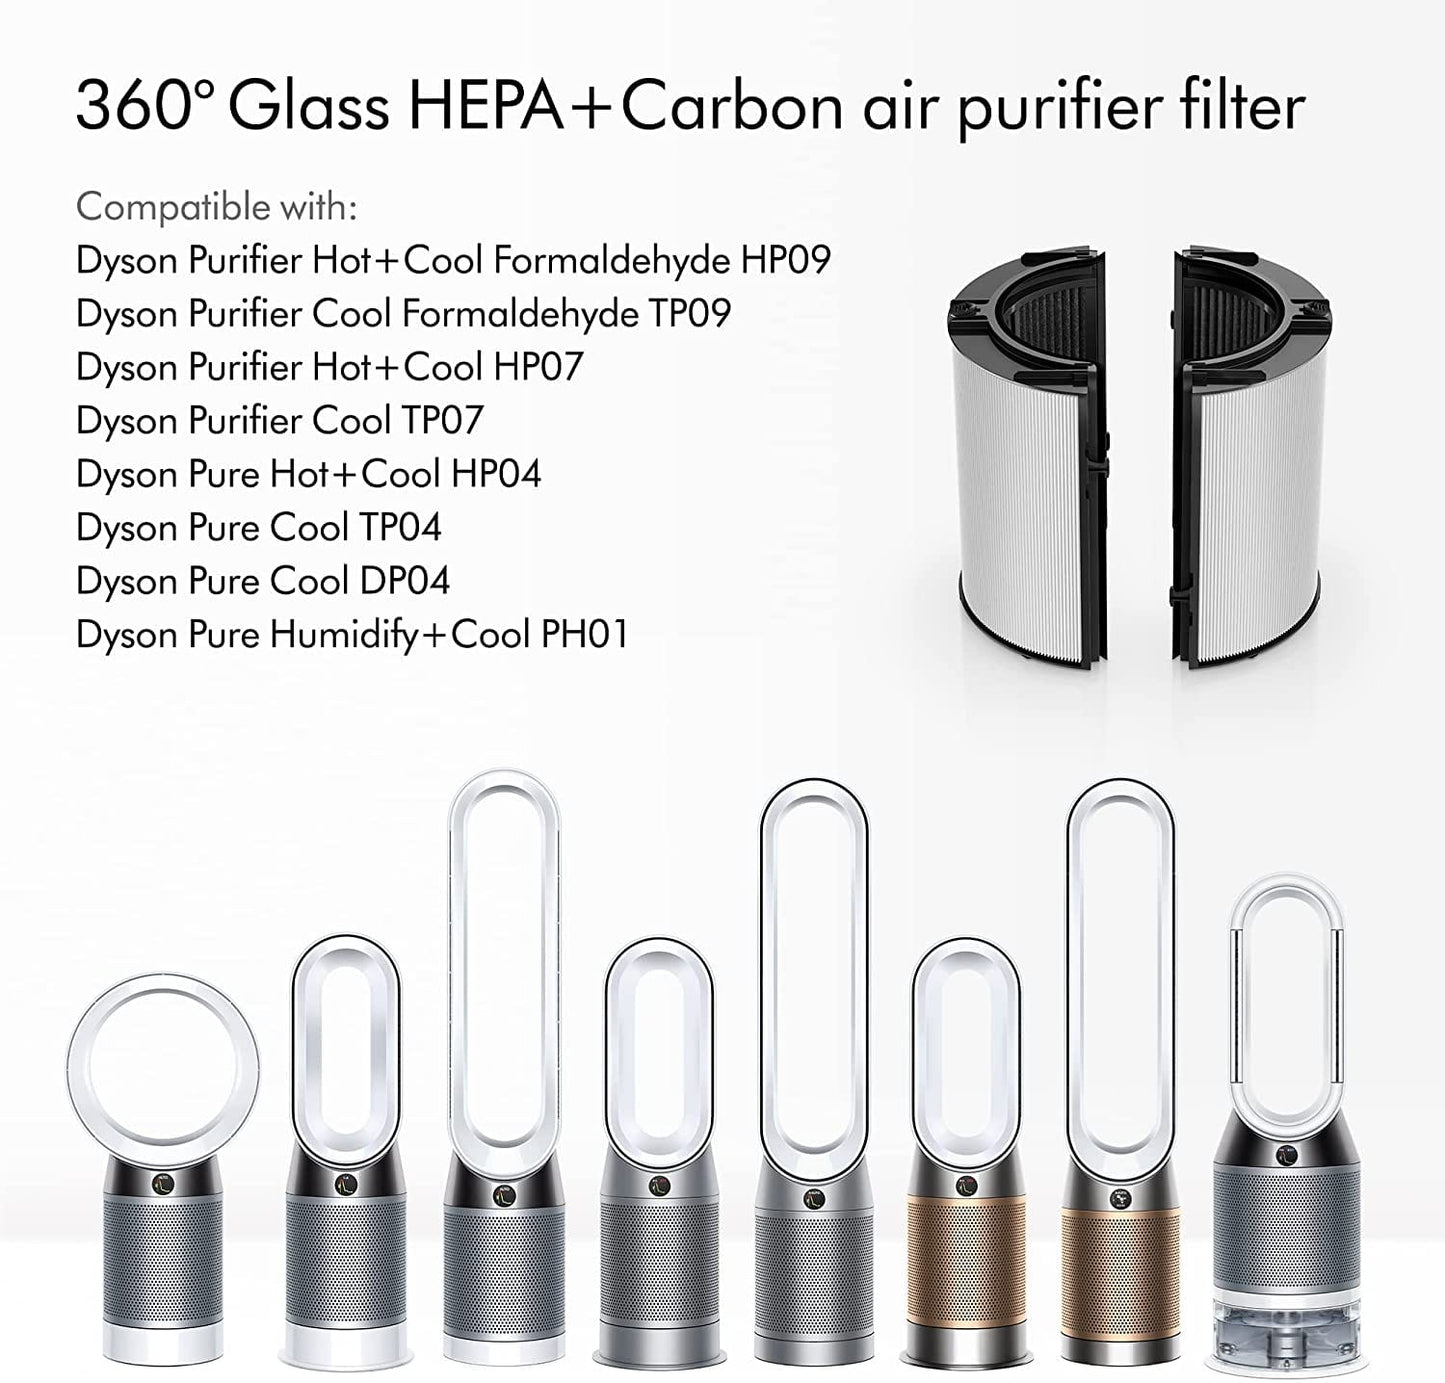 Dyson Appliances Dyson 360° Combi Glass HEPA & Carbon Replacement Filter